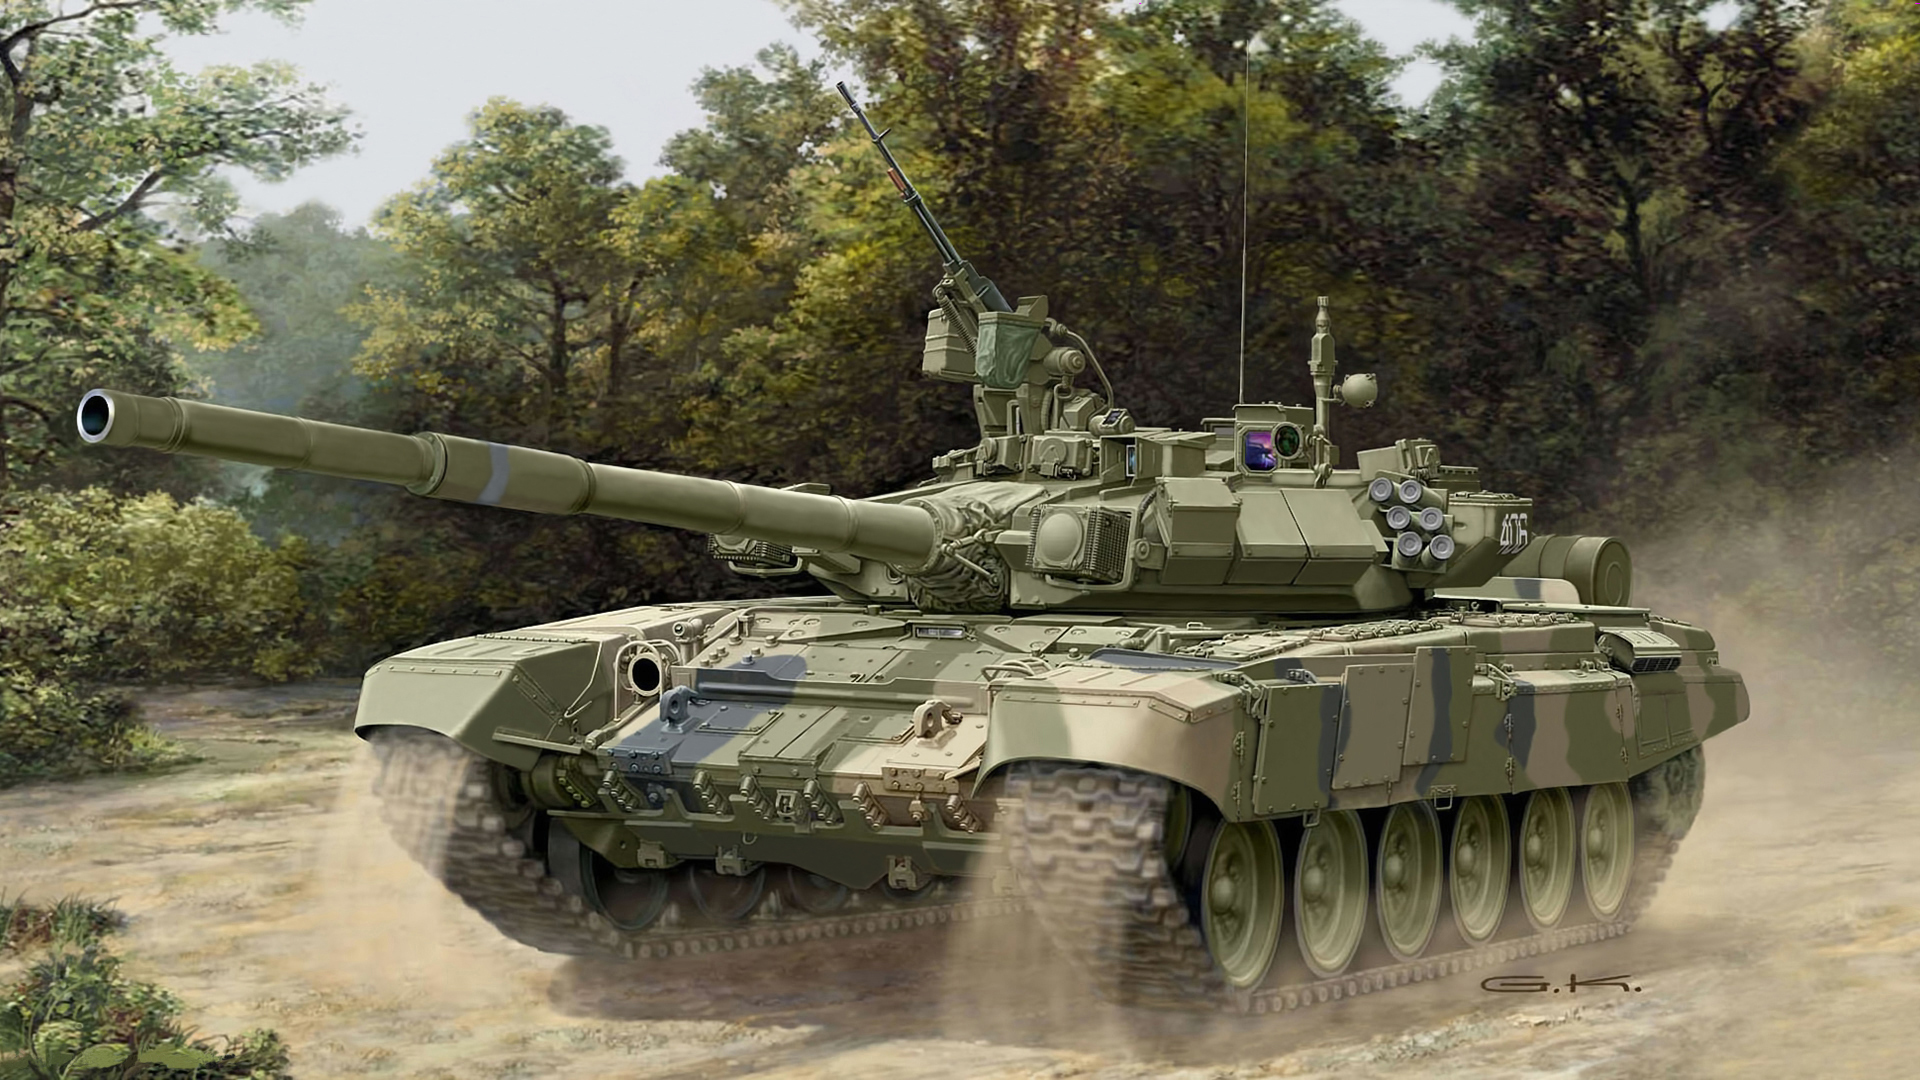 “坦克两项”2016决赛写真集锦 中国96A改进型坦克颜值爆表（10）-千龙网·中国首都网